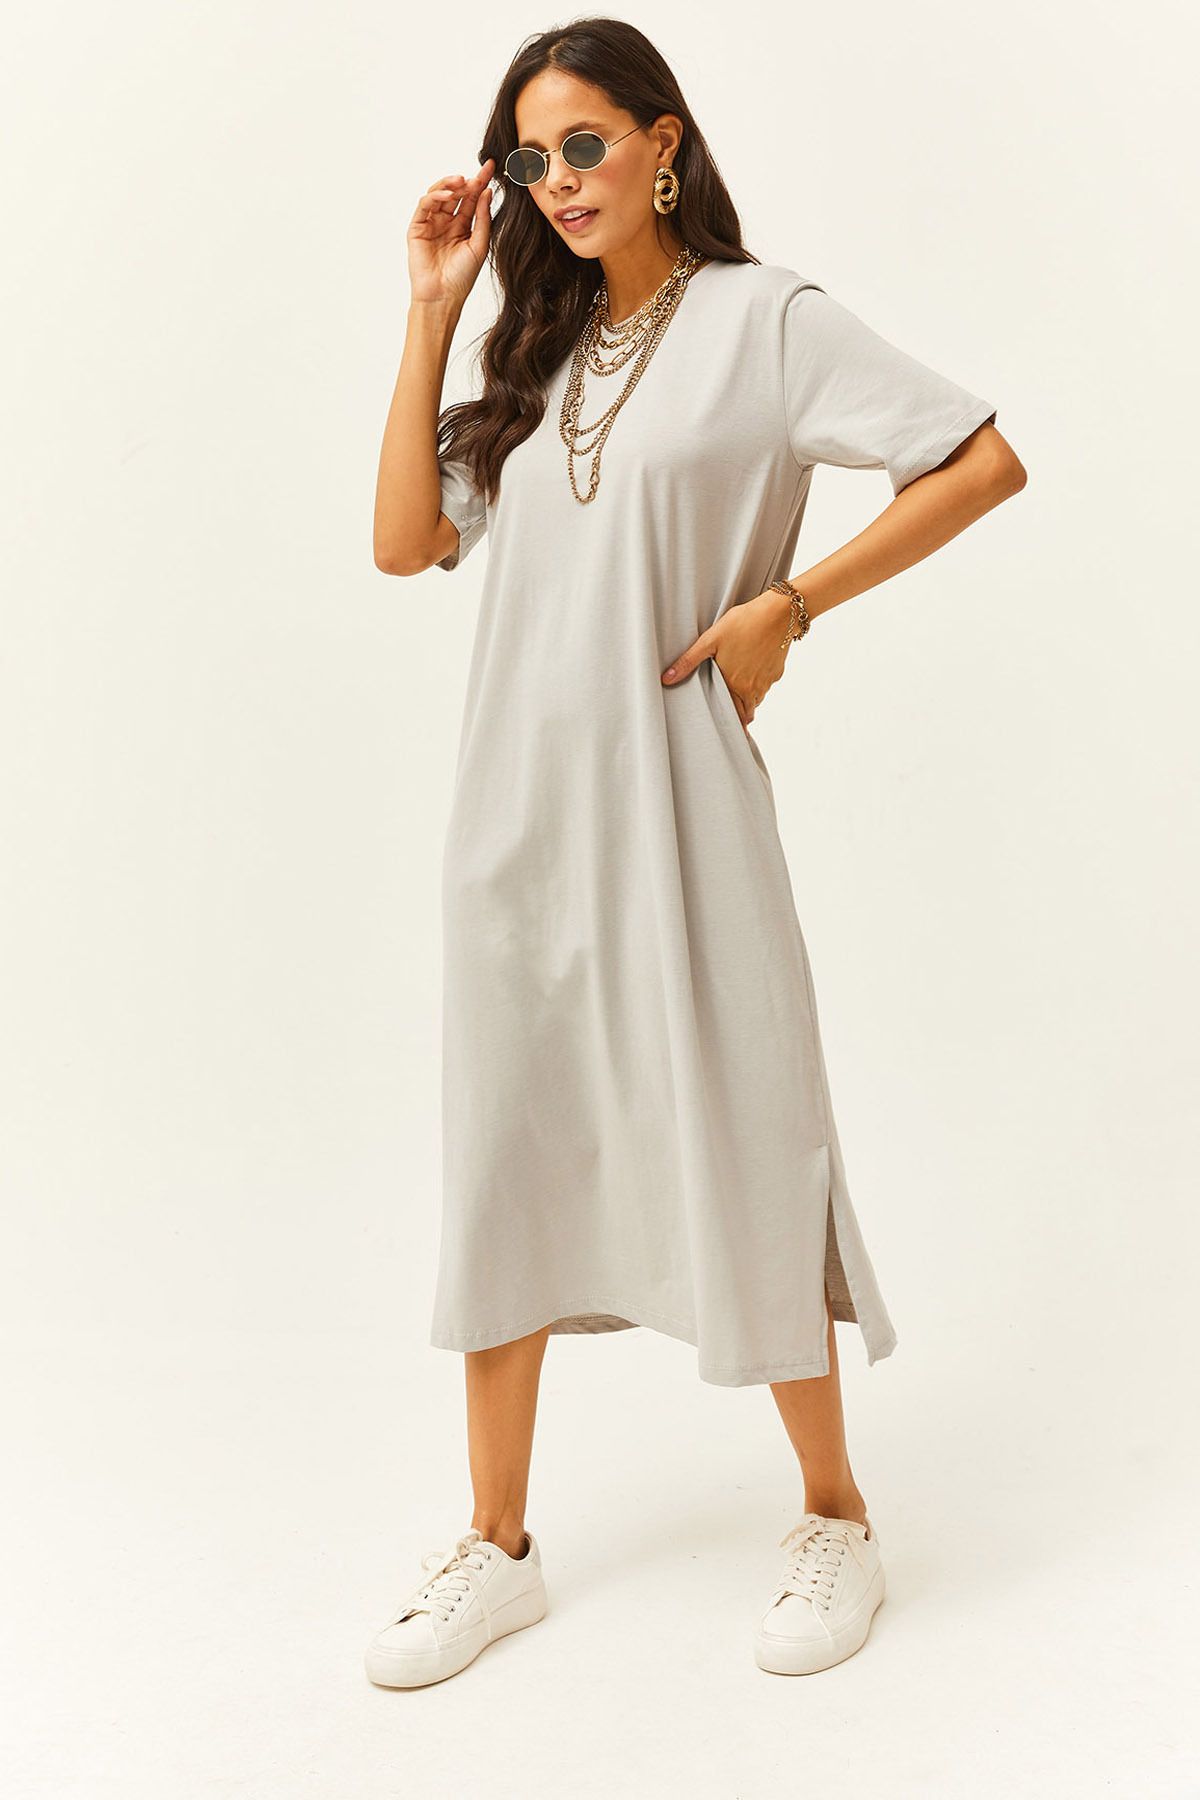 Olalook Kadın Yunus Gri Yanı Yırtmaçlı Oversize Pamuk Elbise ELB-19001880